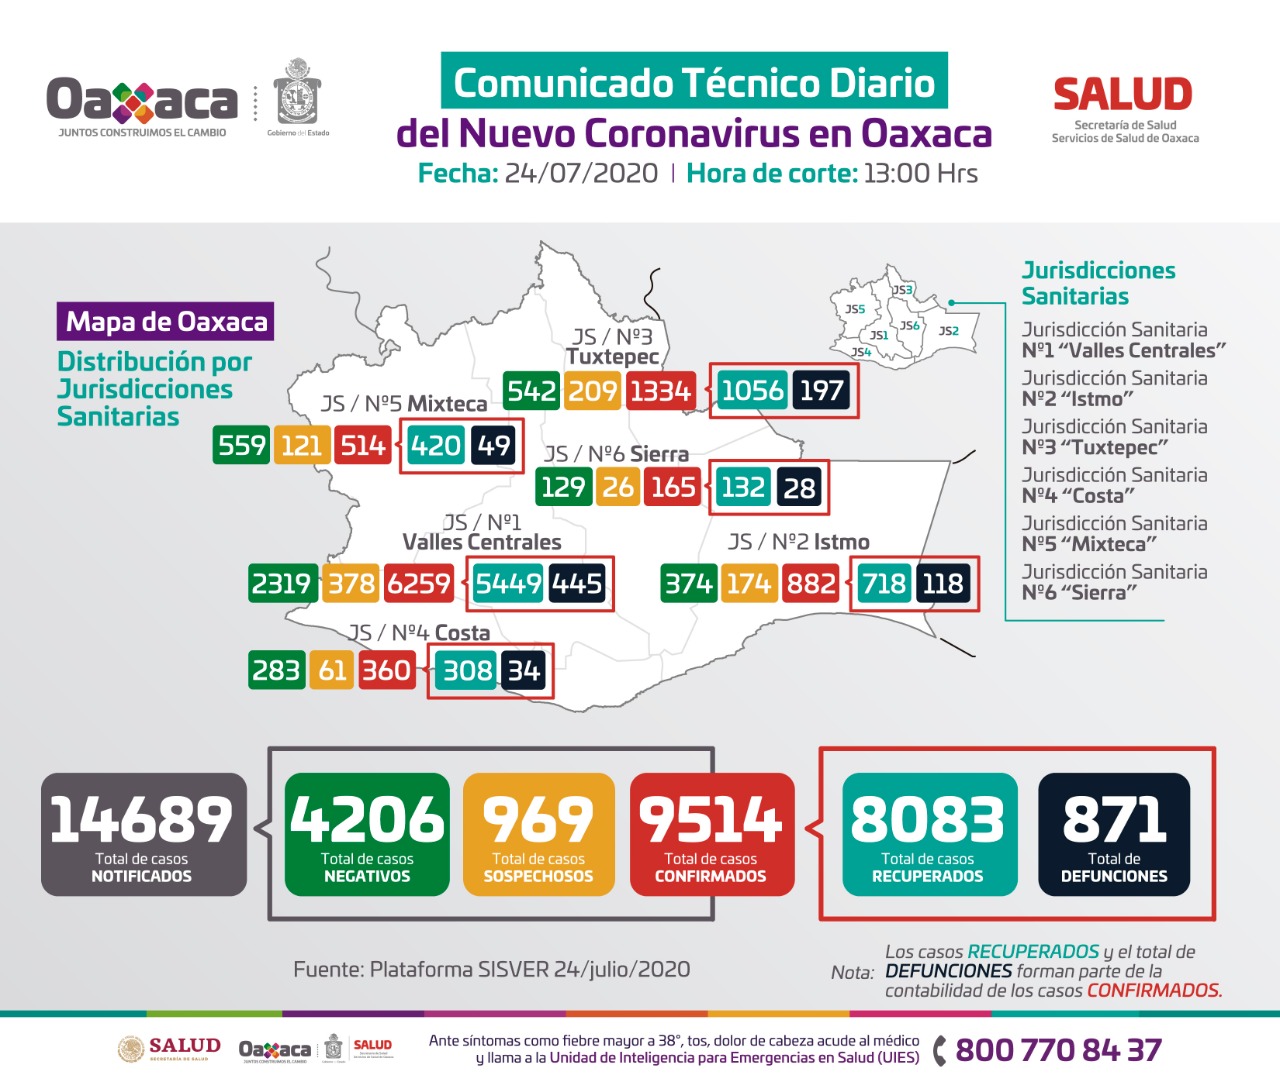 Registra Oaxaca 10 fallecimientos más, en total suman 871 defunciones a causa de Covid-19